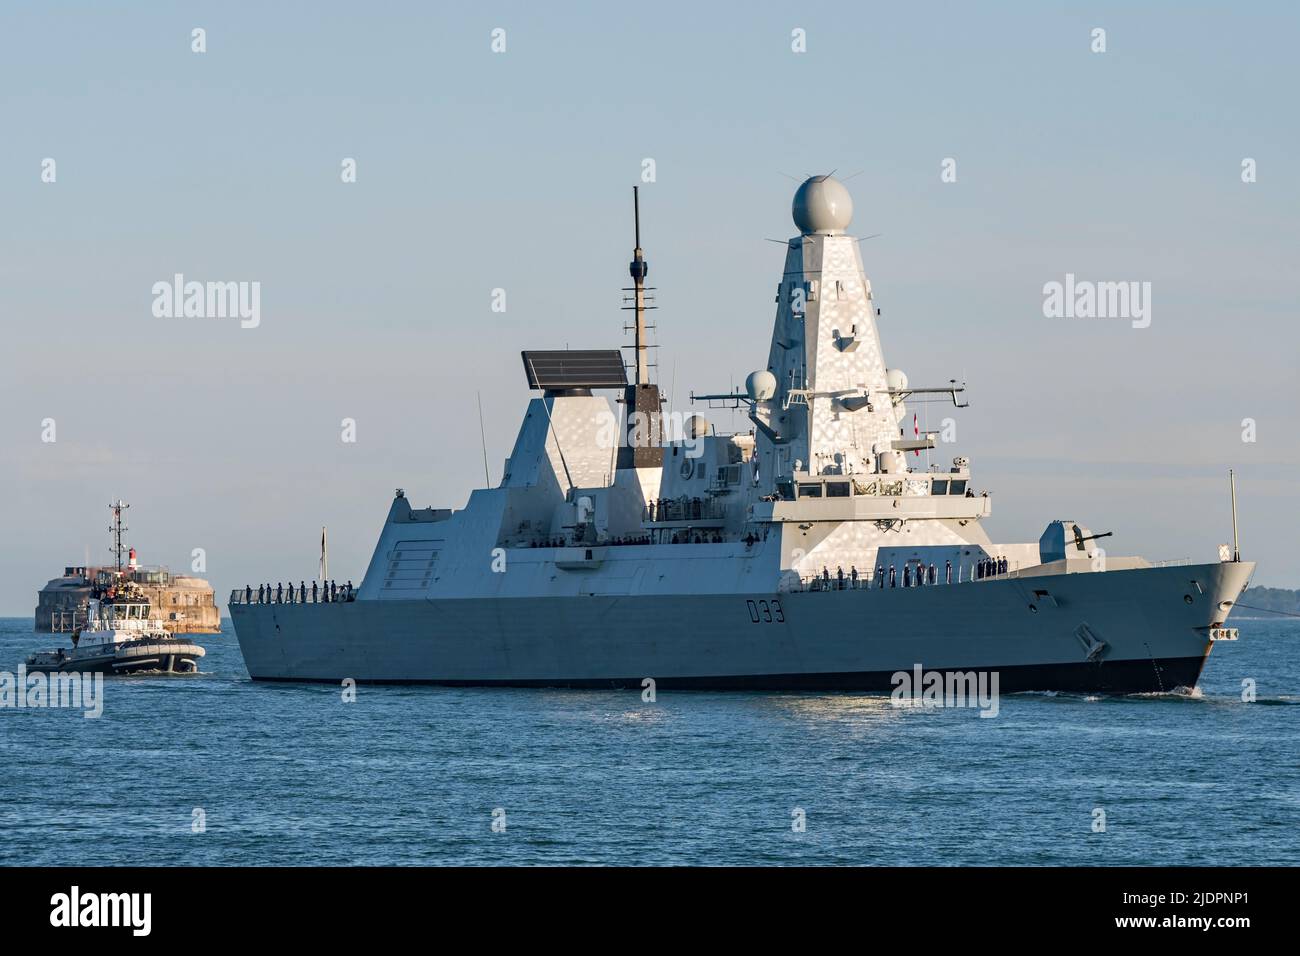 Der Luftverteidigungszerstörer HMS Dauntless (D33) der Royal Navy Typ 45 kehrte am 22/6/2022 nach einer Motorüberholung in Liverpool, Großbritannien, nach Portsmouth zurück. Stockfoto